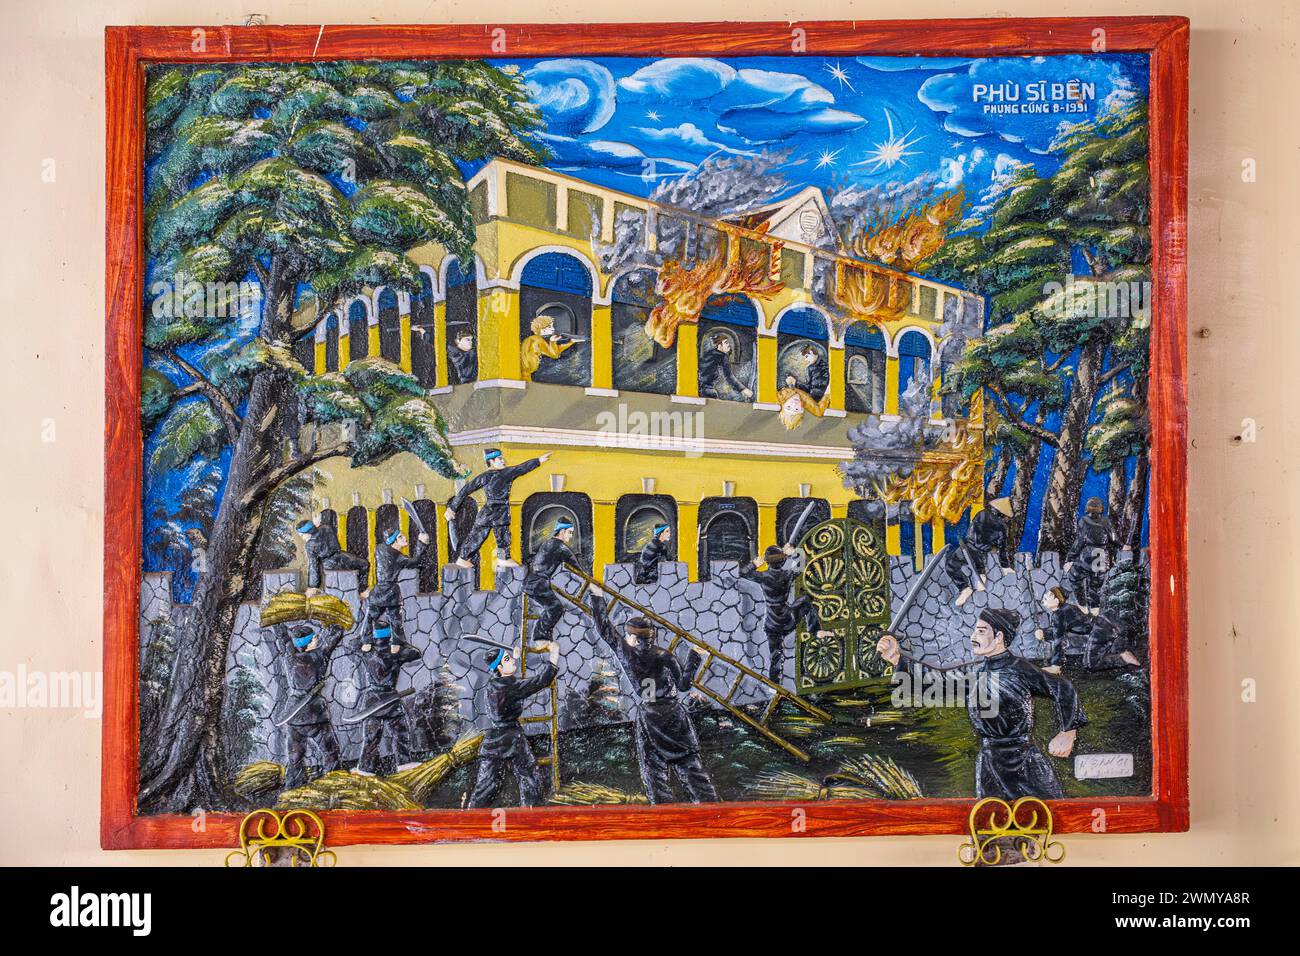 Vietnam, Mekong Delta, Provinz Kien Giang, Rach Gia, Nguyen Trung Truc Tempel gewidmet Nguyen Trung Truc, einem Anführer der 1860er-Jahre-Kampagne gegen die neu angekommenen Franzosen, ein Gemälde, das die Schlacht um die Zerstörung von Rach Gias Festung am 16. Juni 1868 illustriert Stockfoto